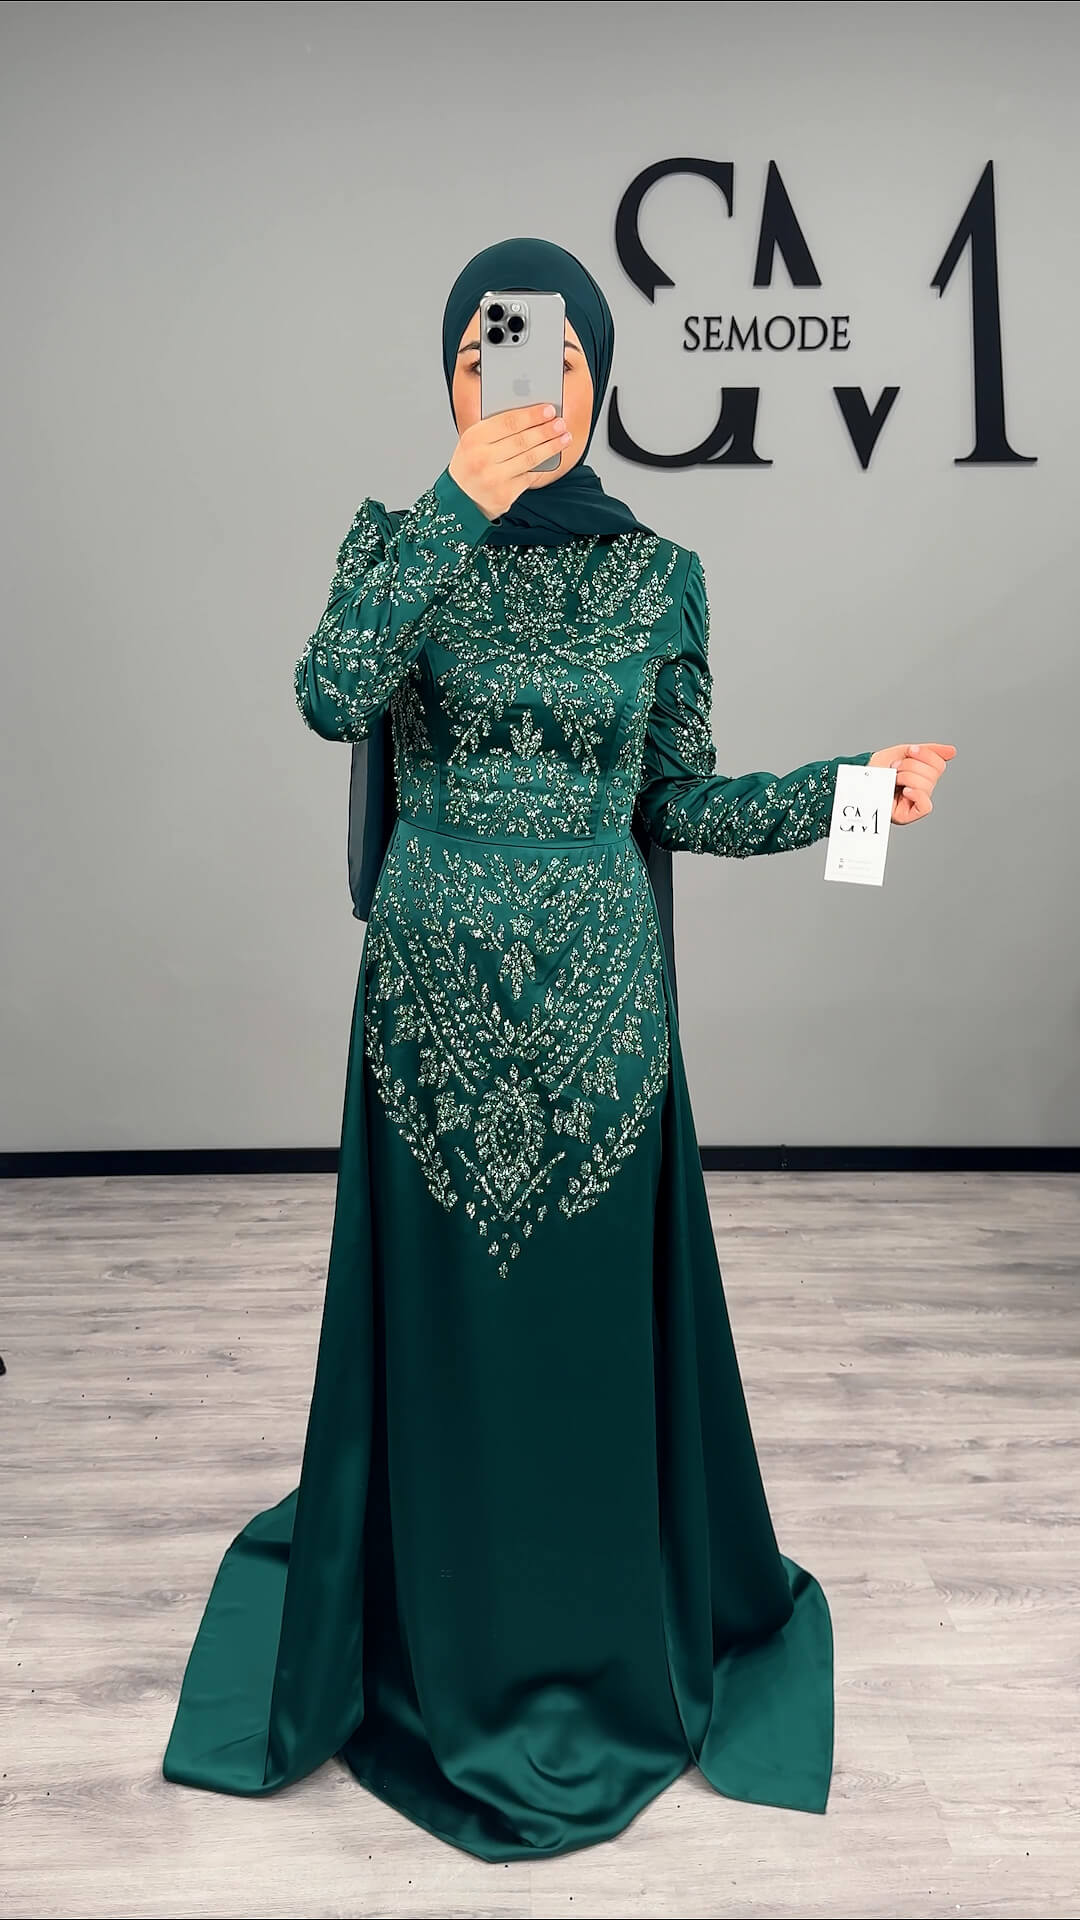 Ciara Abendkleid Smaragd Semode